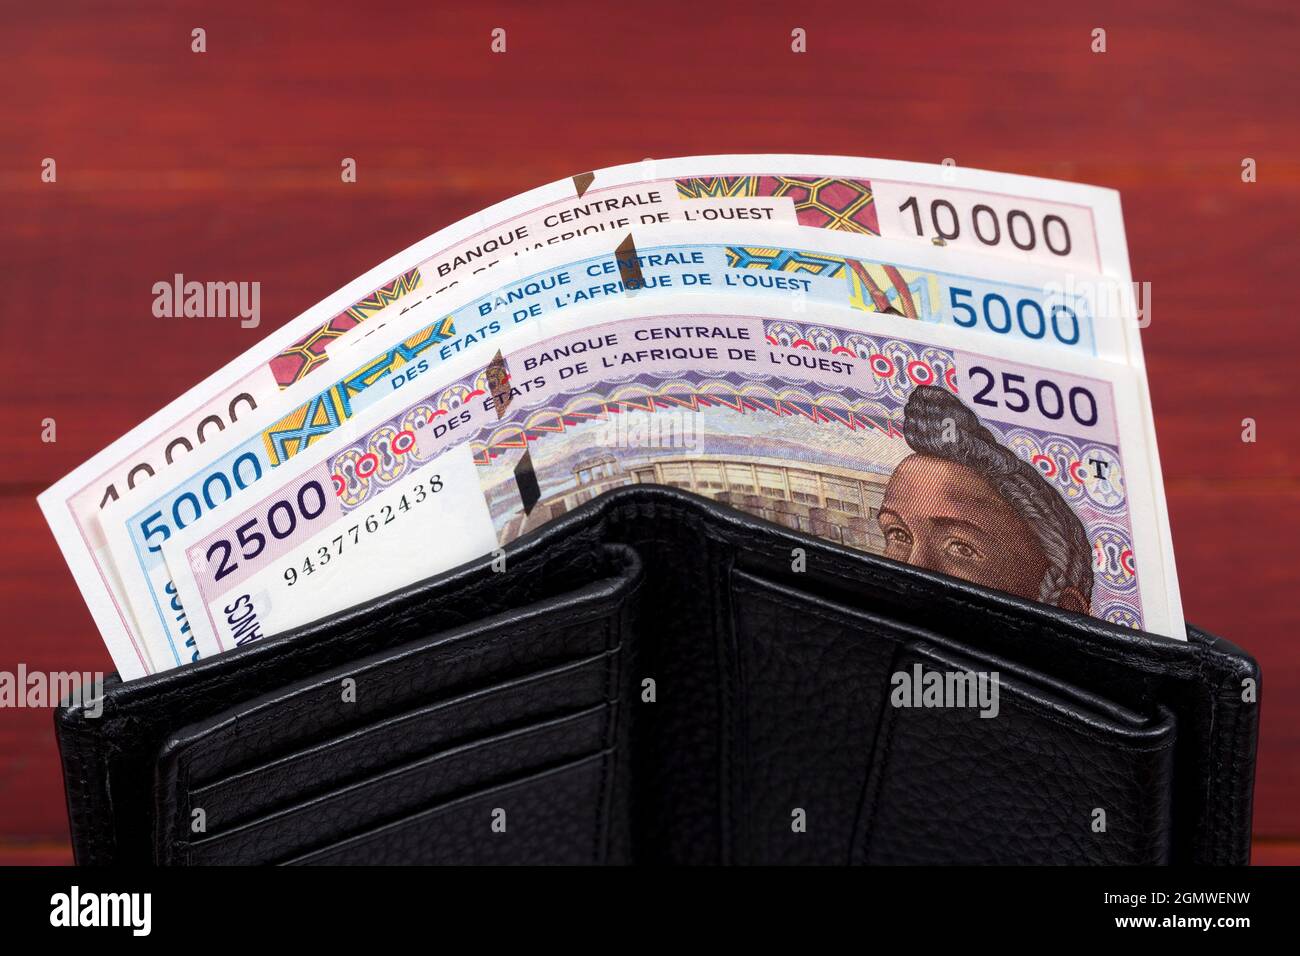 Alte westafrikanische Staaten Geld - Franc in der schwarzen Brieftasche Stockfoto